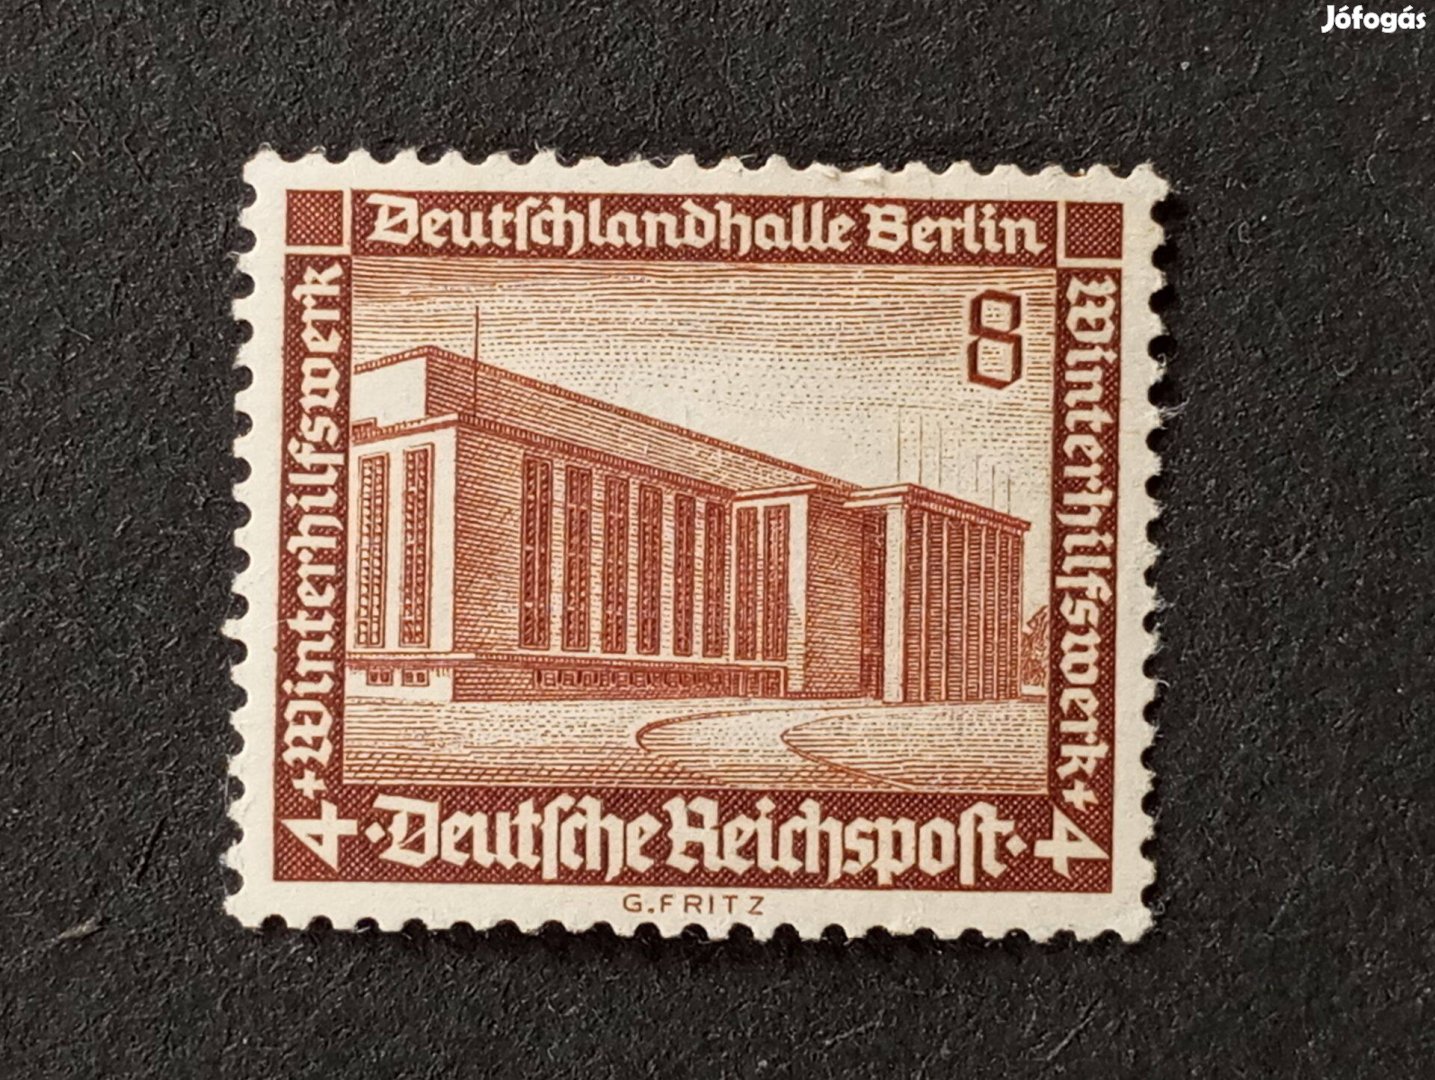 Deutsches Reich postatiszta bélyeg 1936-os jótékonysági bélyegek